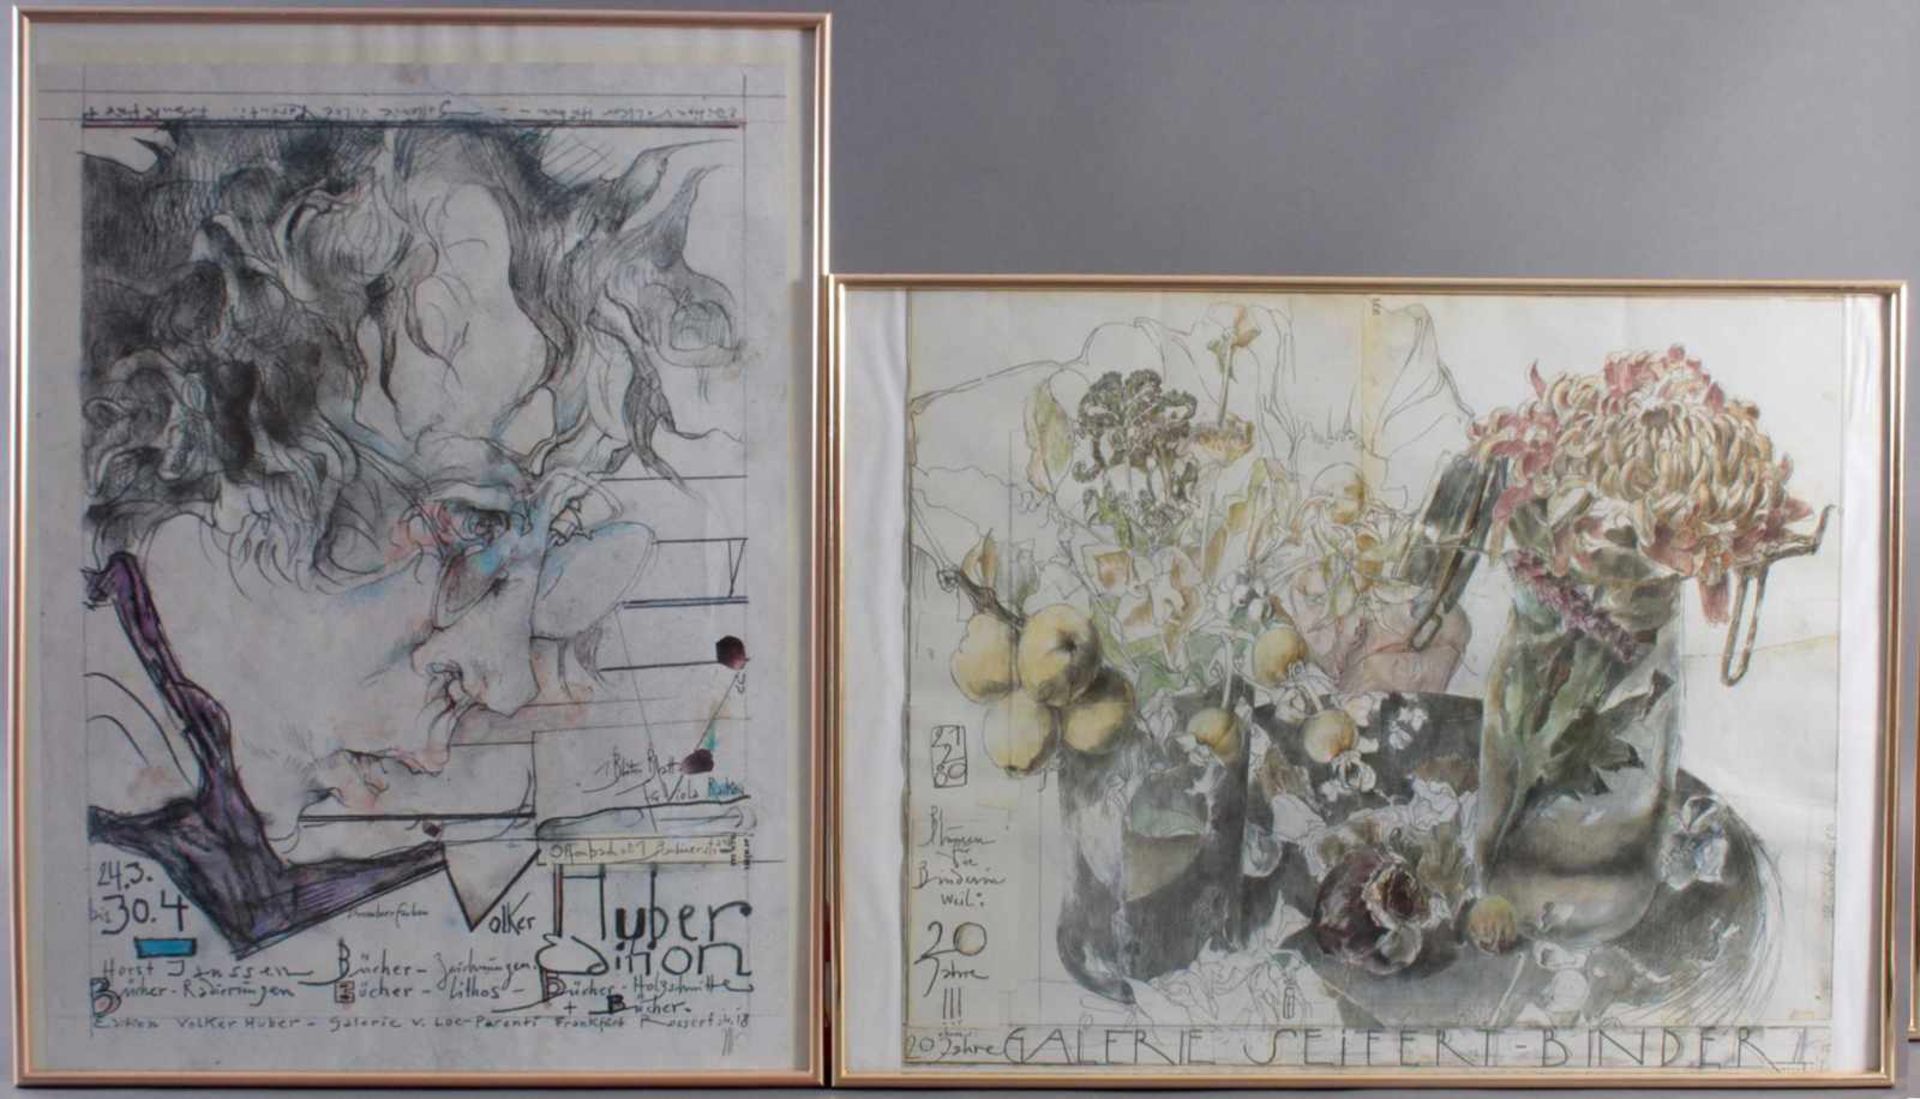 Horst Janssen (1929 - 1995)2 Kunstdrucke, "Galerie Seifert-Binder", ca. 70 x 60 cm. "